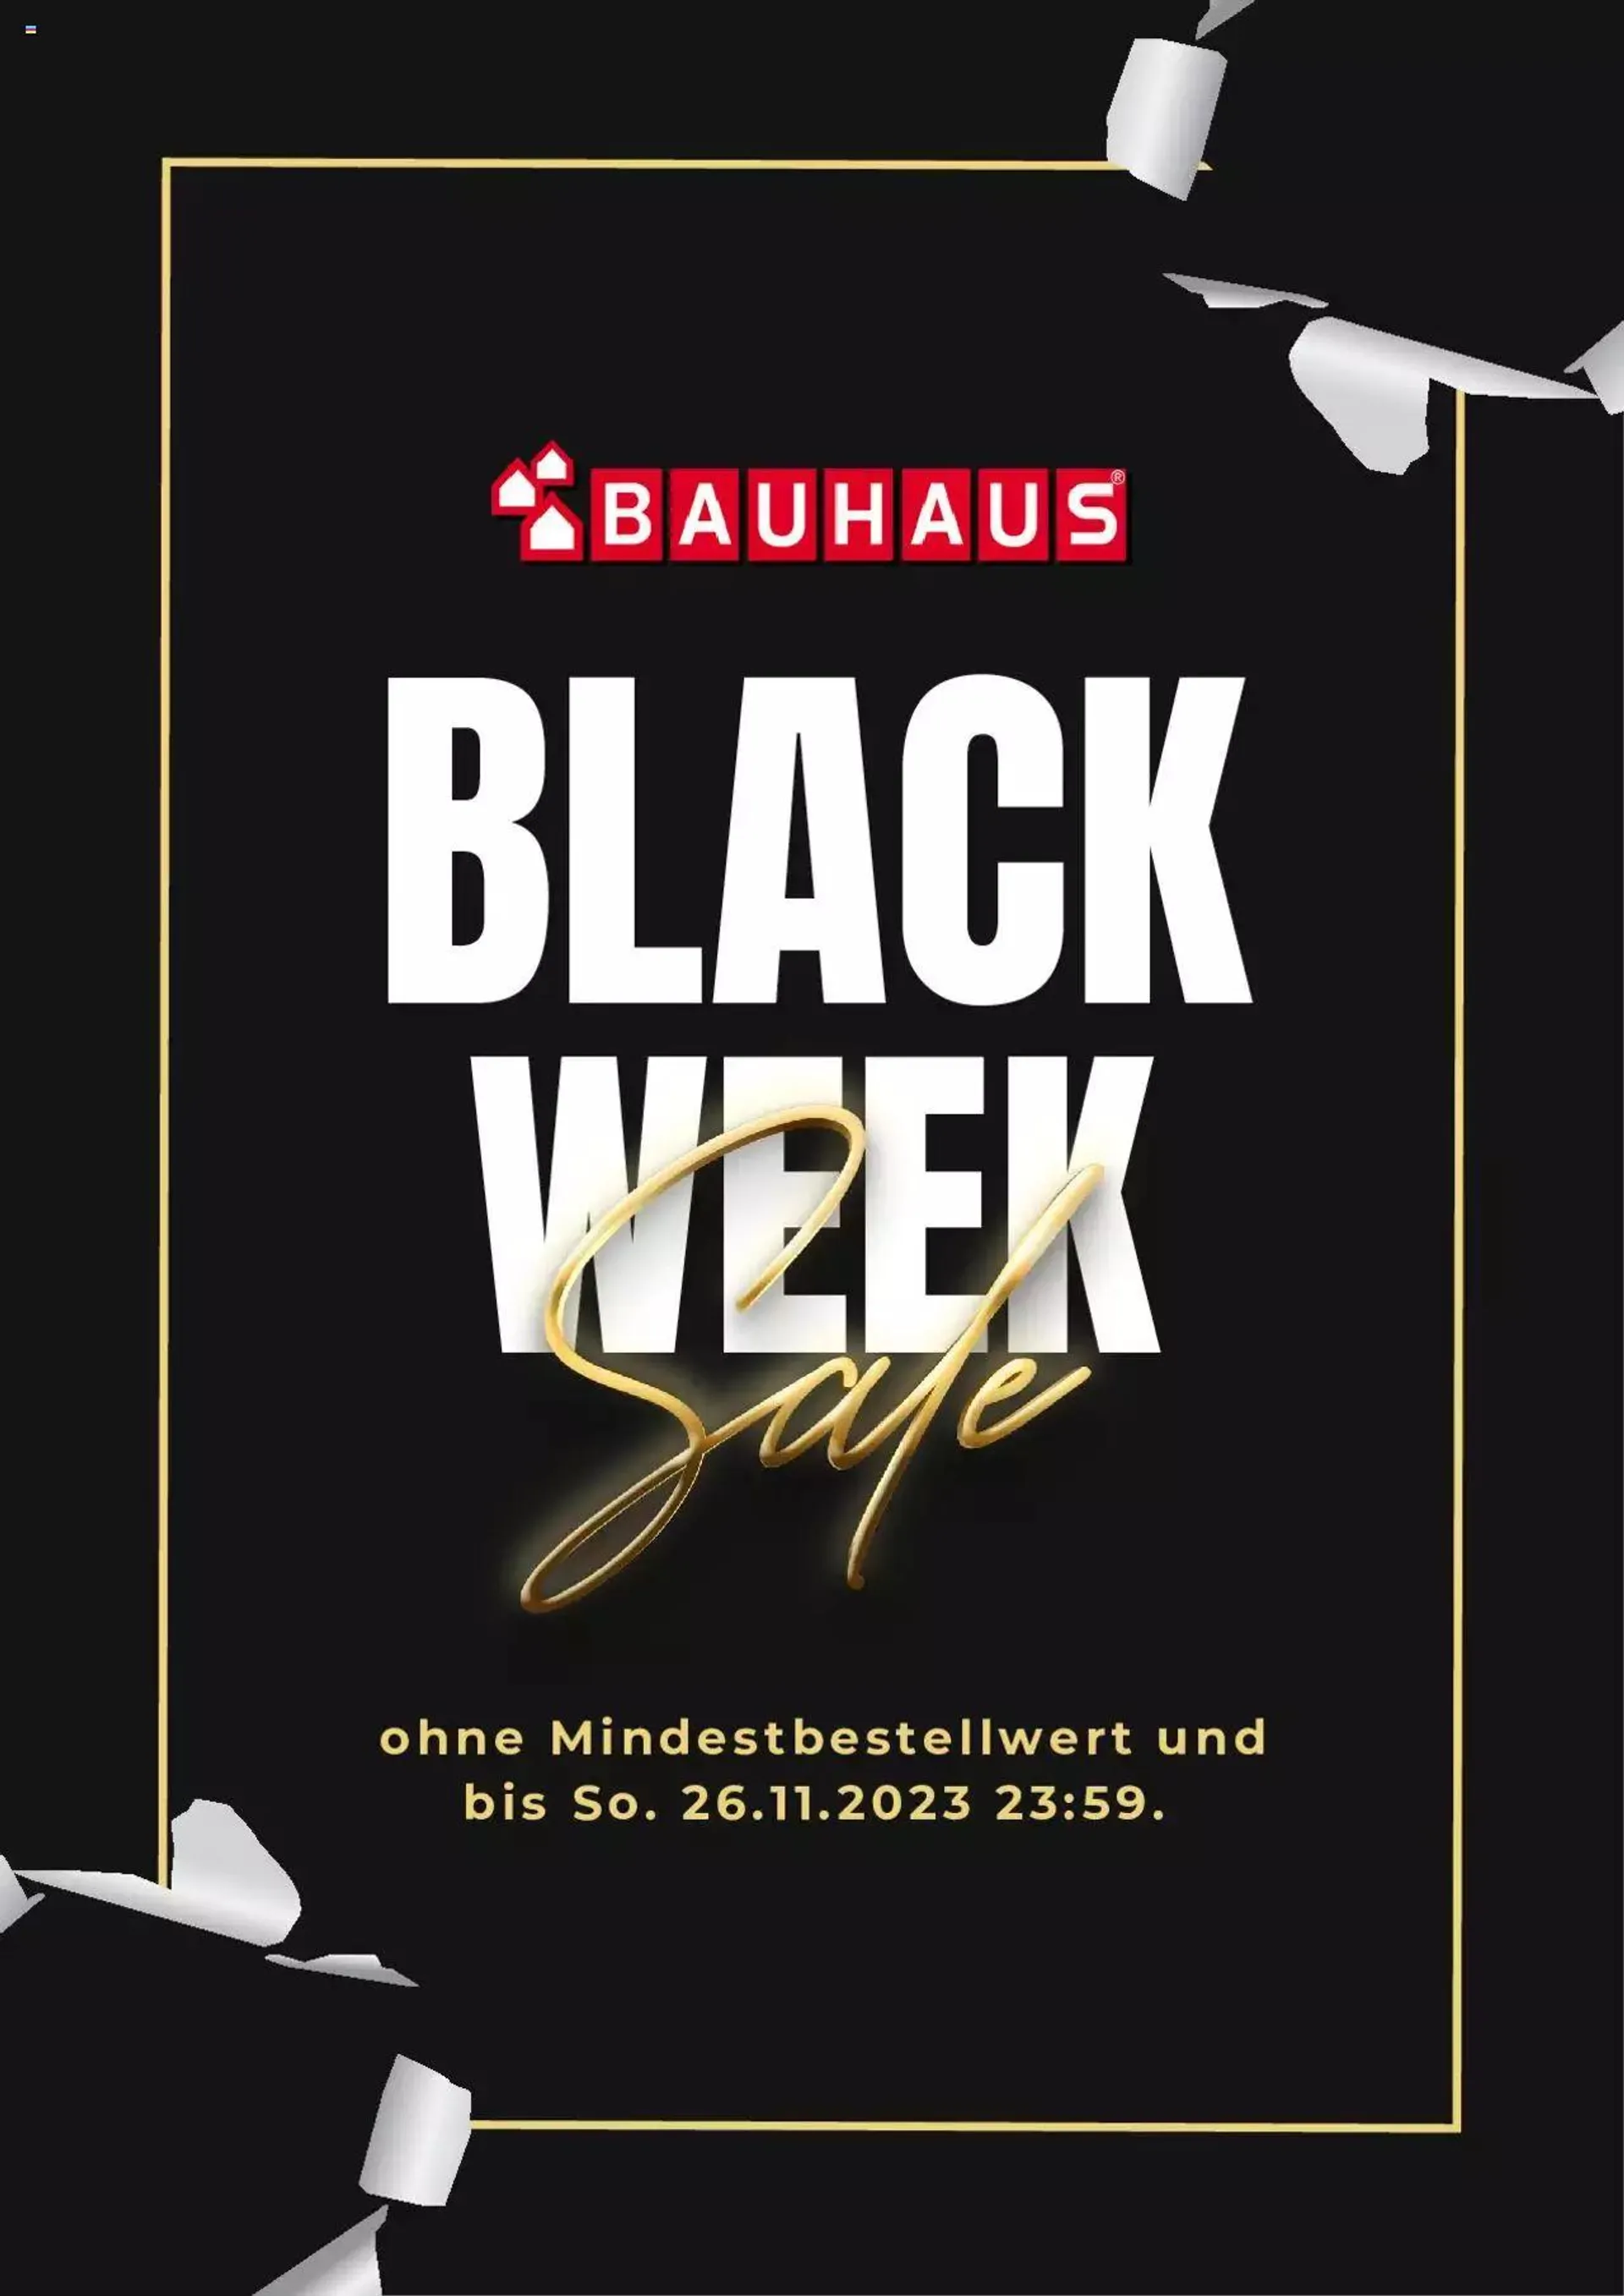 Bauhaus Black Week